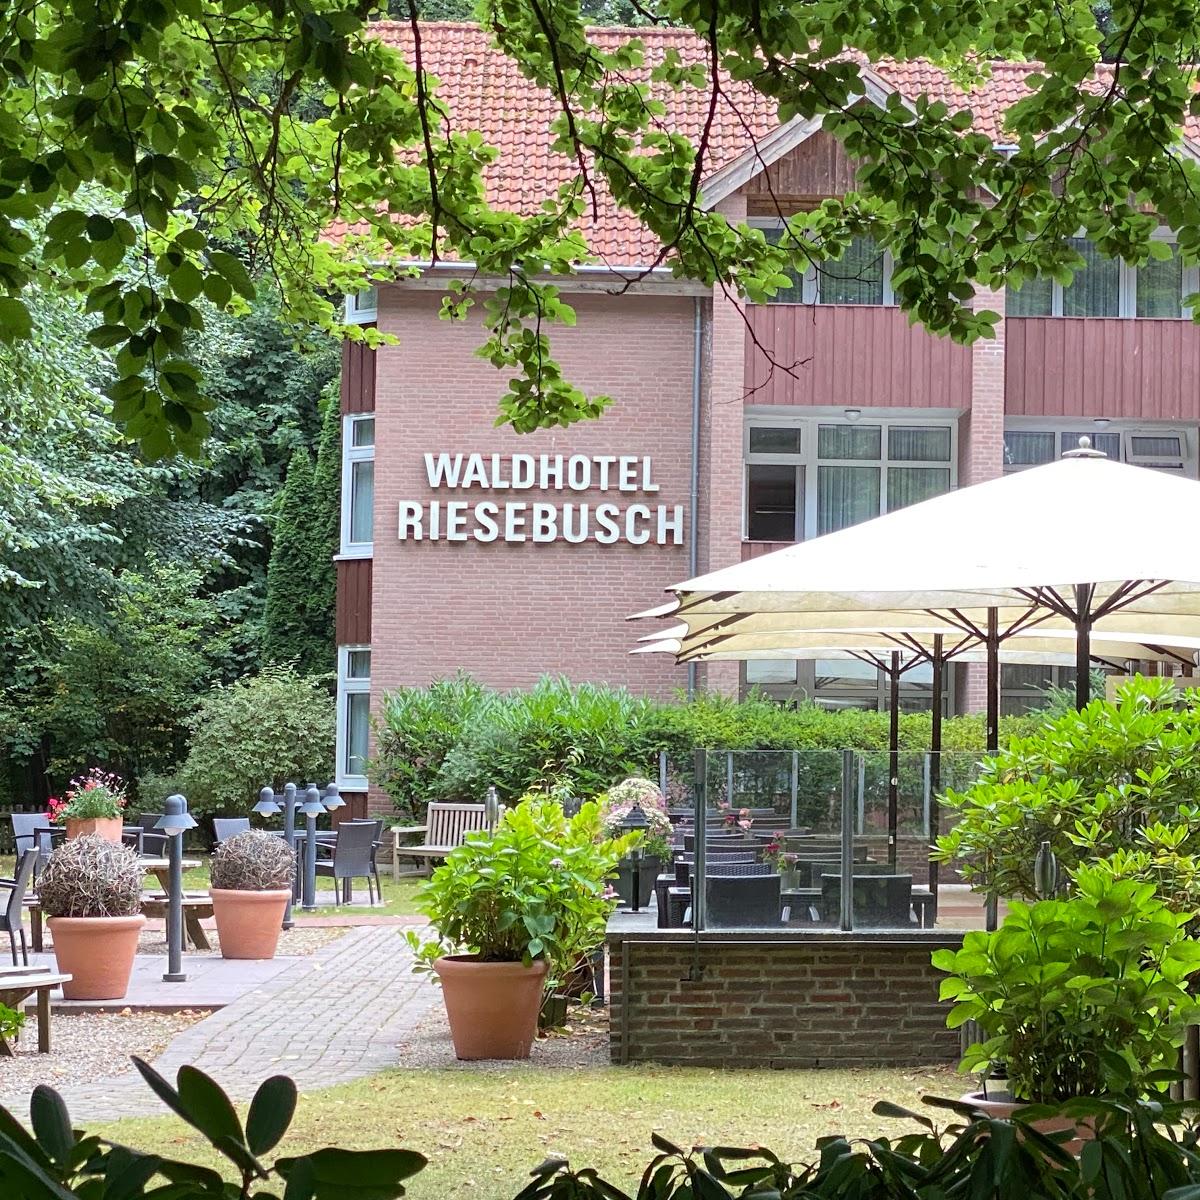 Restaurant "Waldhotel Riesebusch" in Bad Schwartau